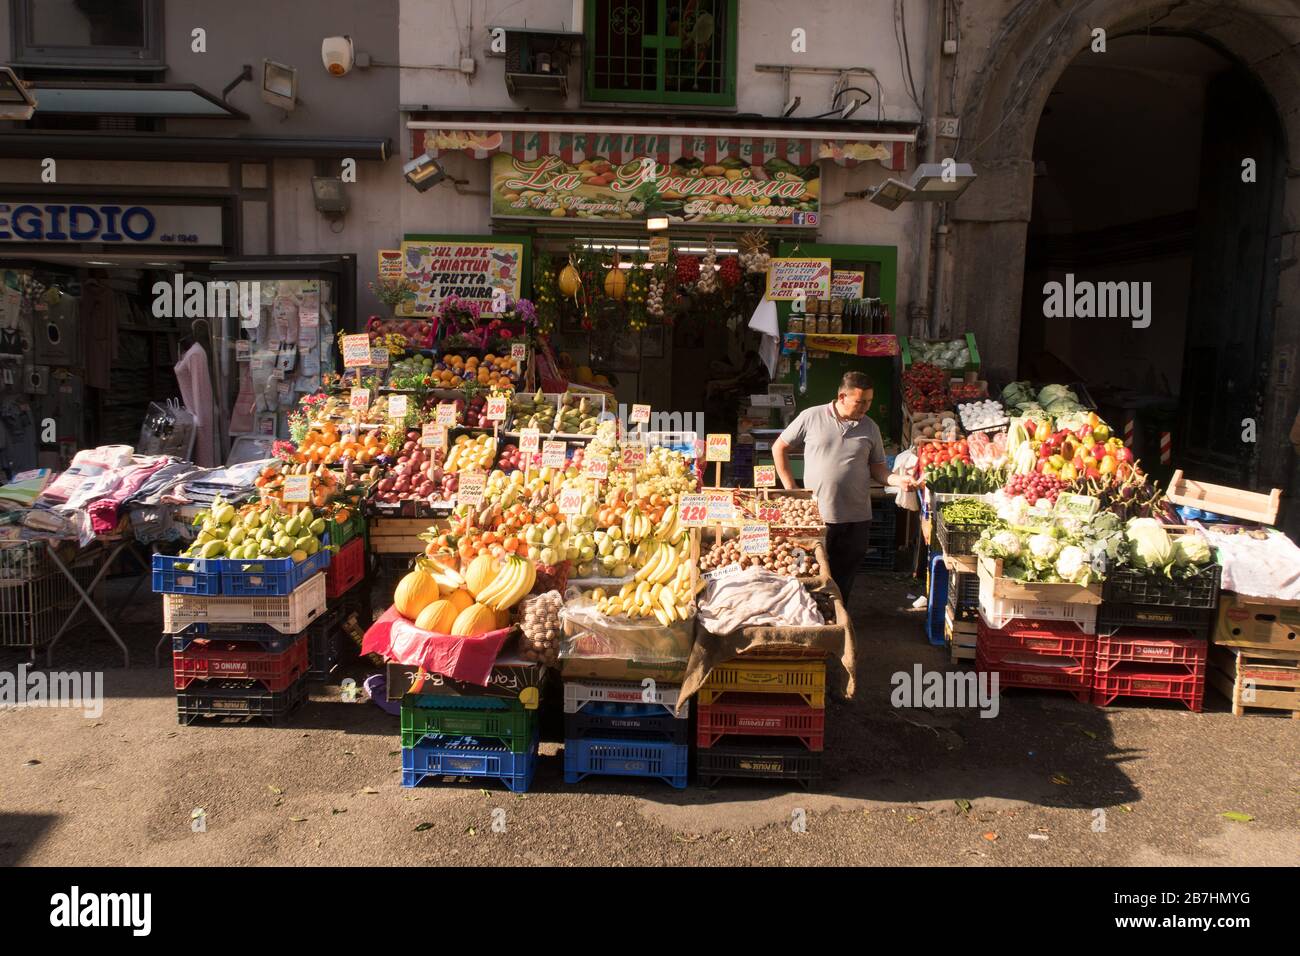 Ein Obst- und Gemüsestall auf einem Markt im Viertel Sanitá in Neapel, Italien Stockfoto